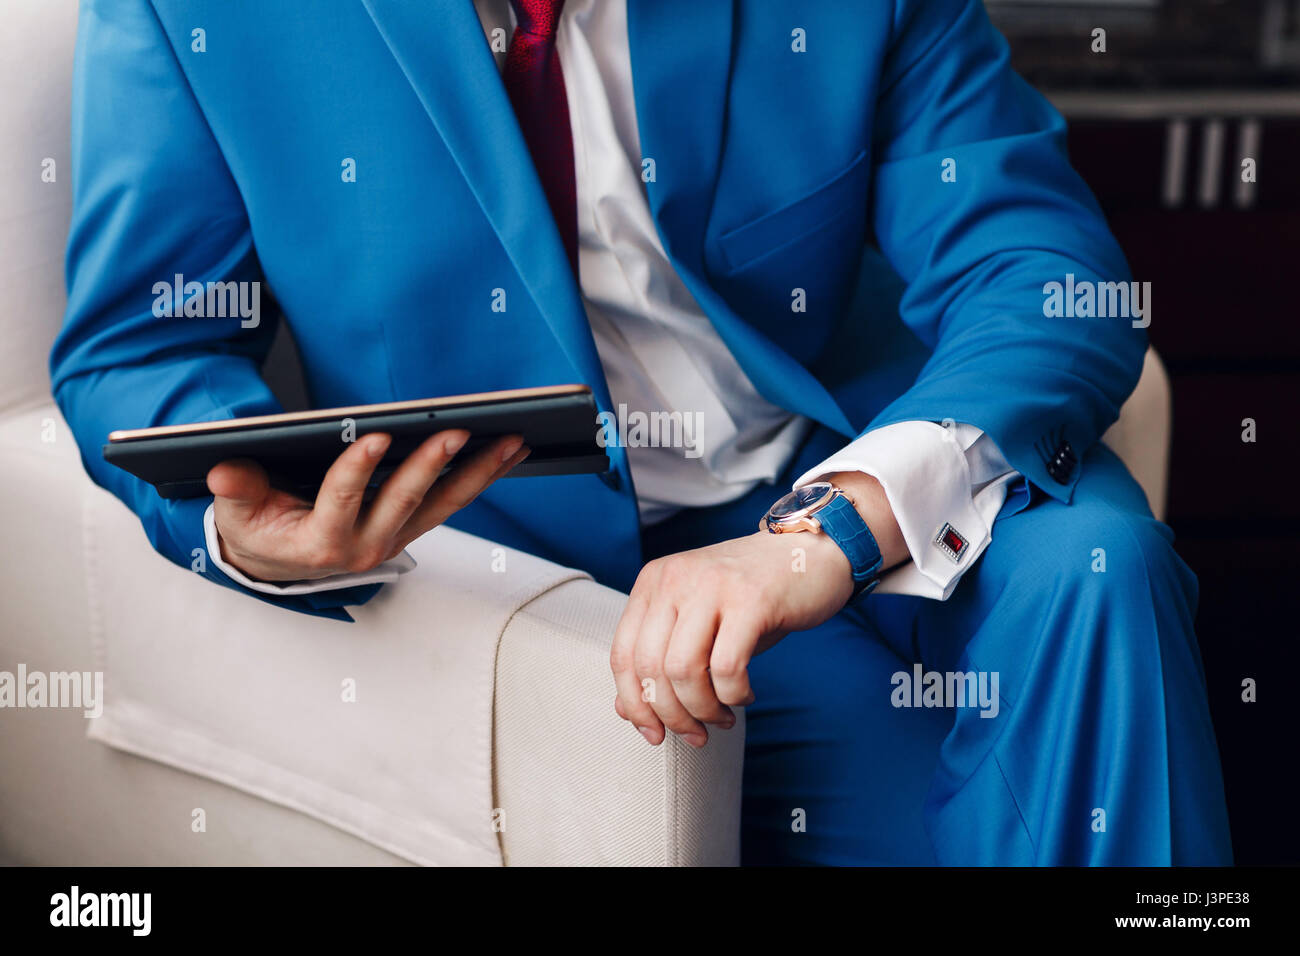 Geschäftsmann halten Sie ein digitale Tablet in der hand beim Sitzen auf einem Sofa in einem blauen Anzug. auf Hand teure mechanische Uhr mit Lederarmband. Hemd mit Manschettenknöpfen Stockfoto